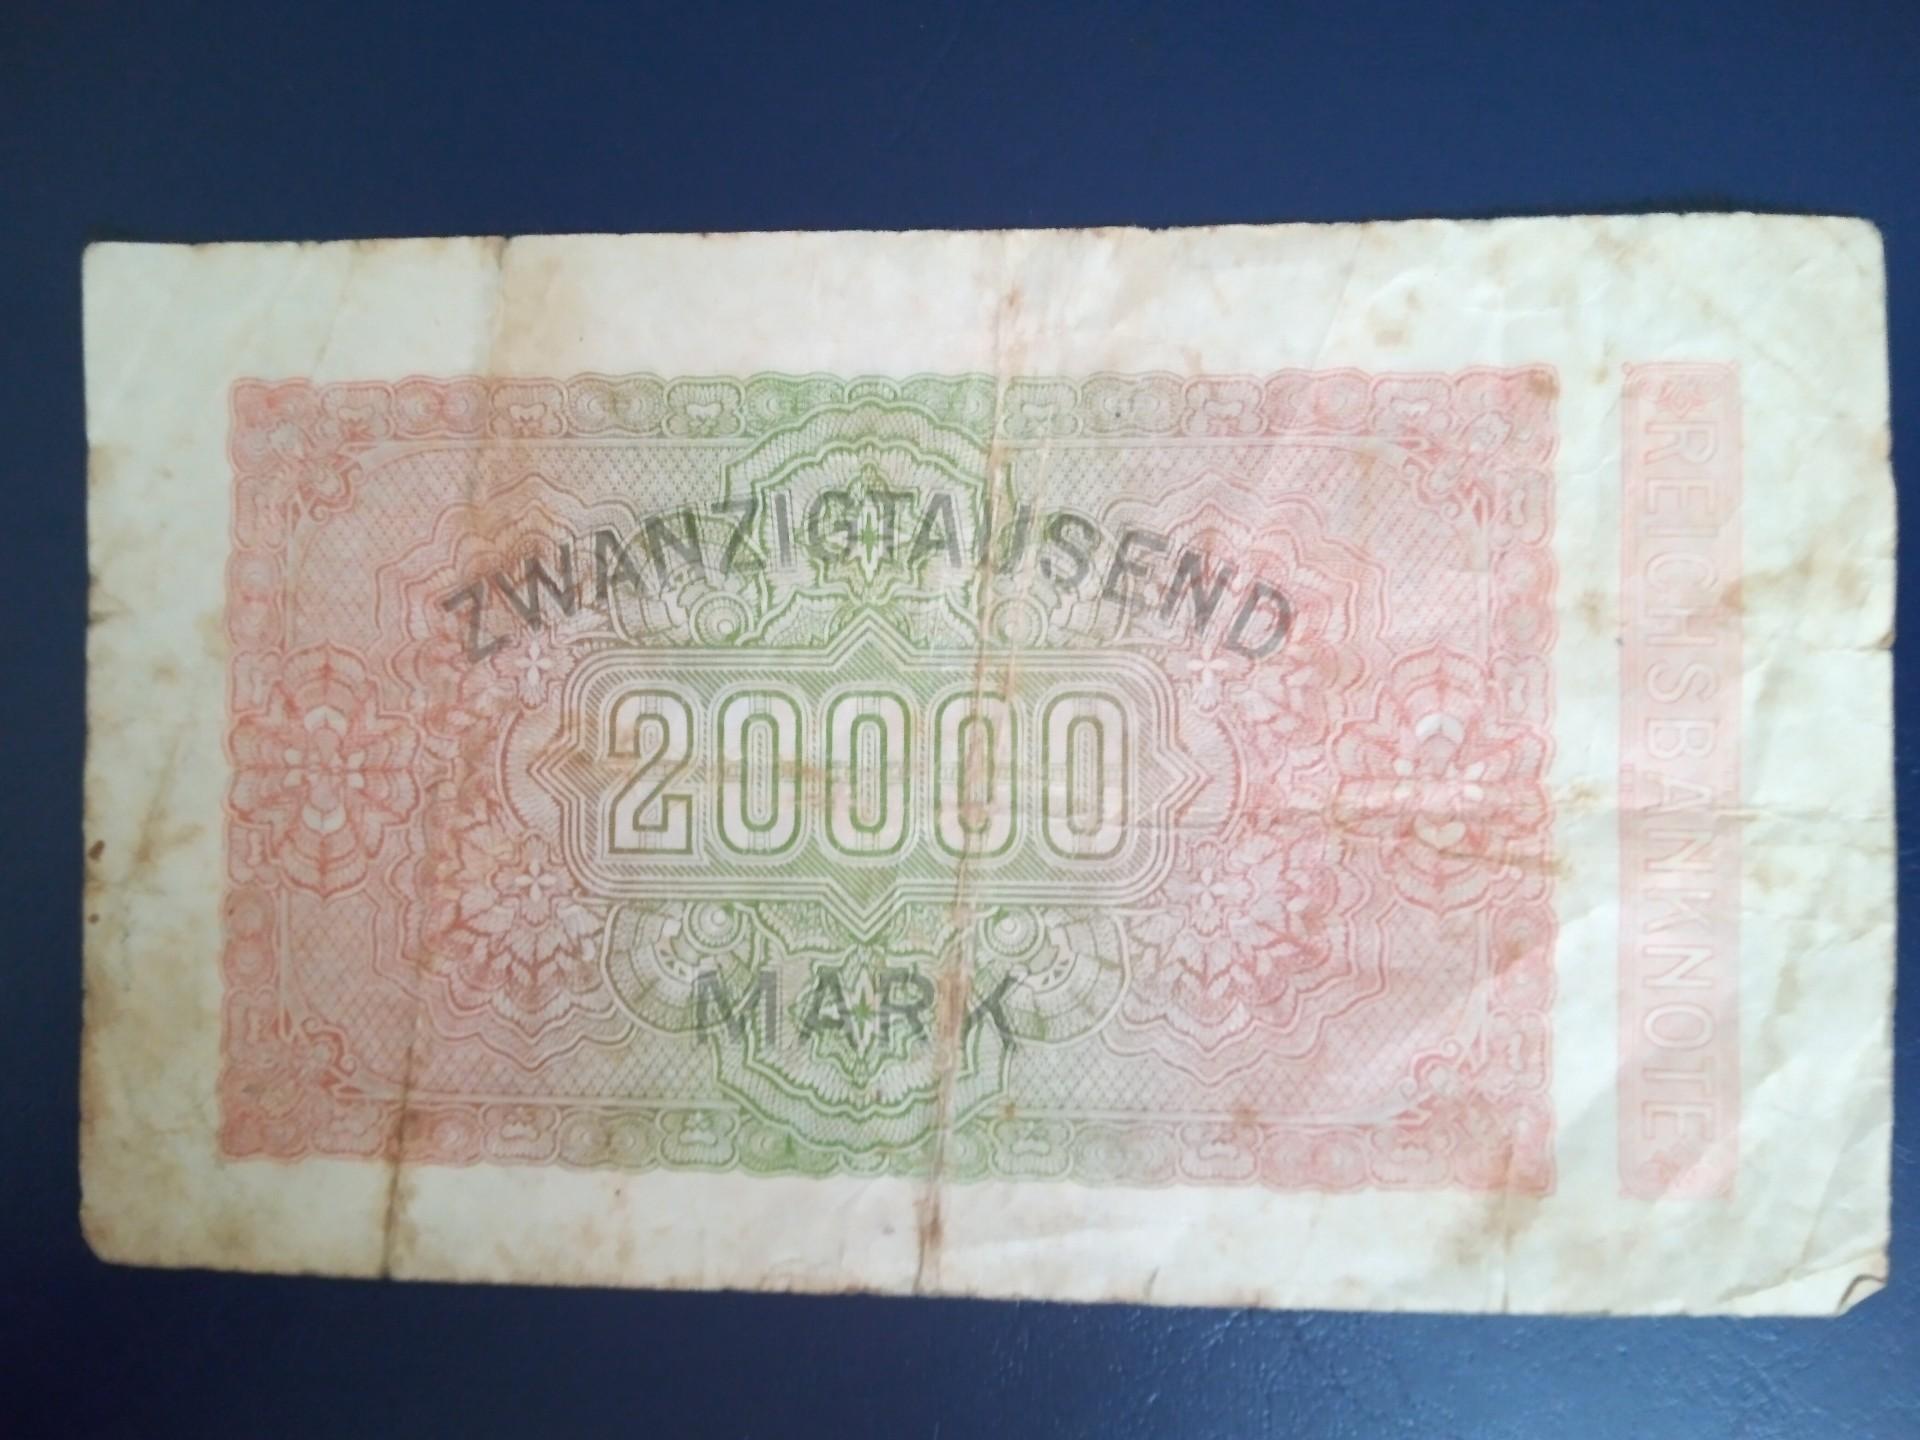 Vokietija Reichsbanknote 20000 Mark 1923